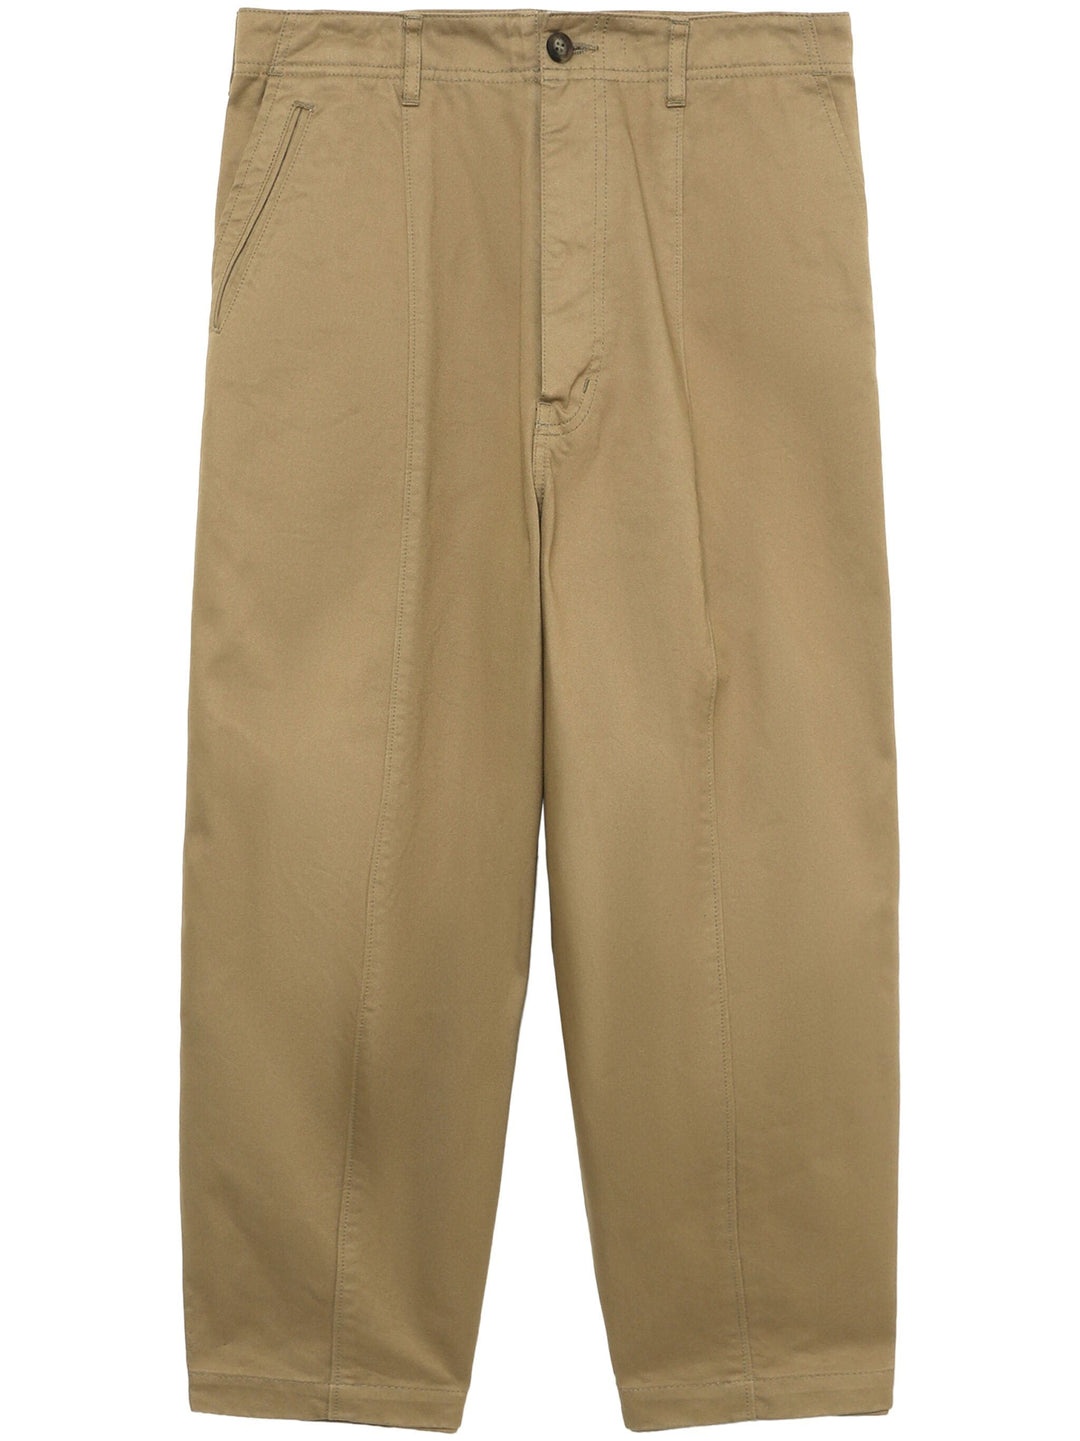 Cotton Chino Cloth Garment Dye Pants - 1